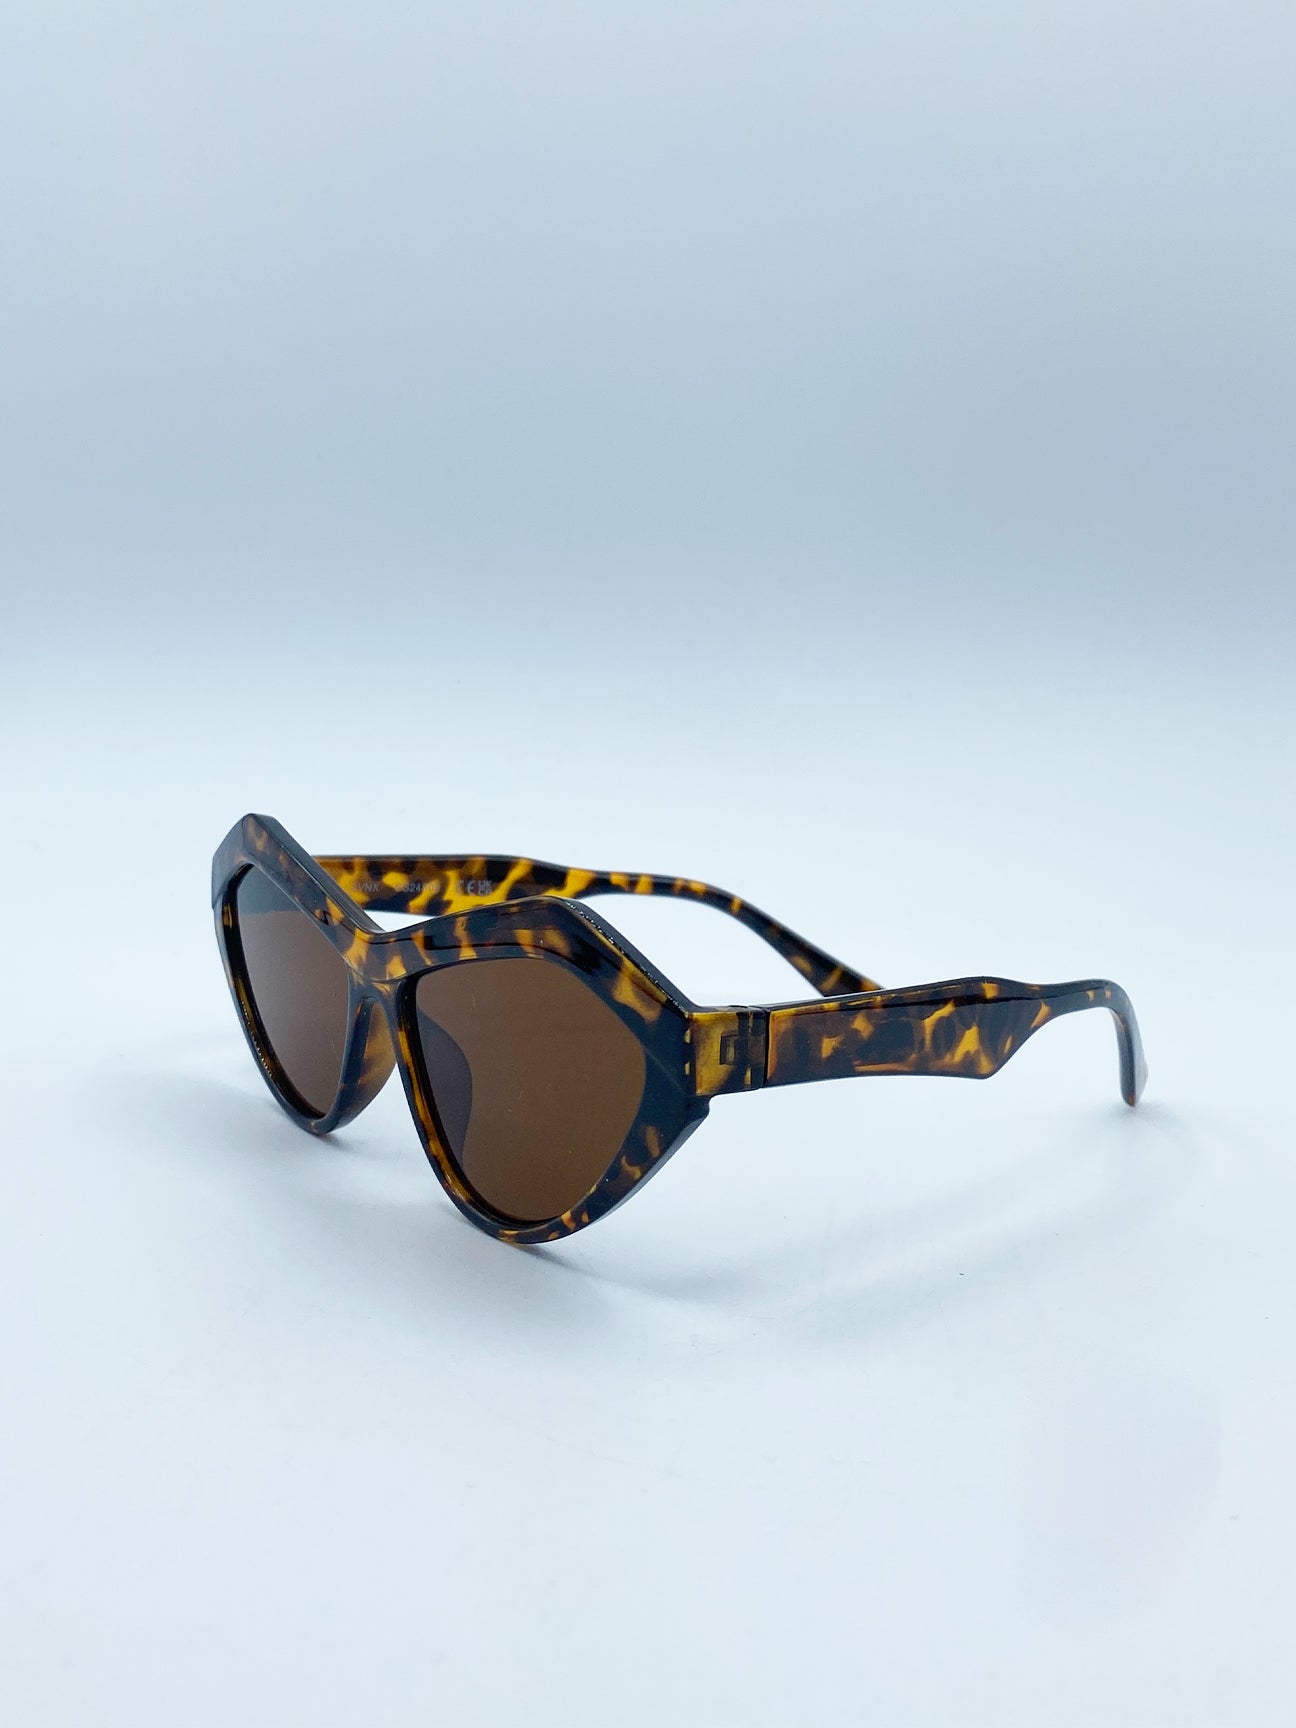 Angular Sunglasses in Tortoiseshell